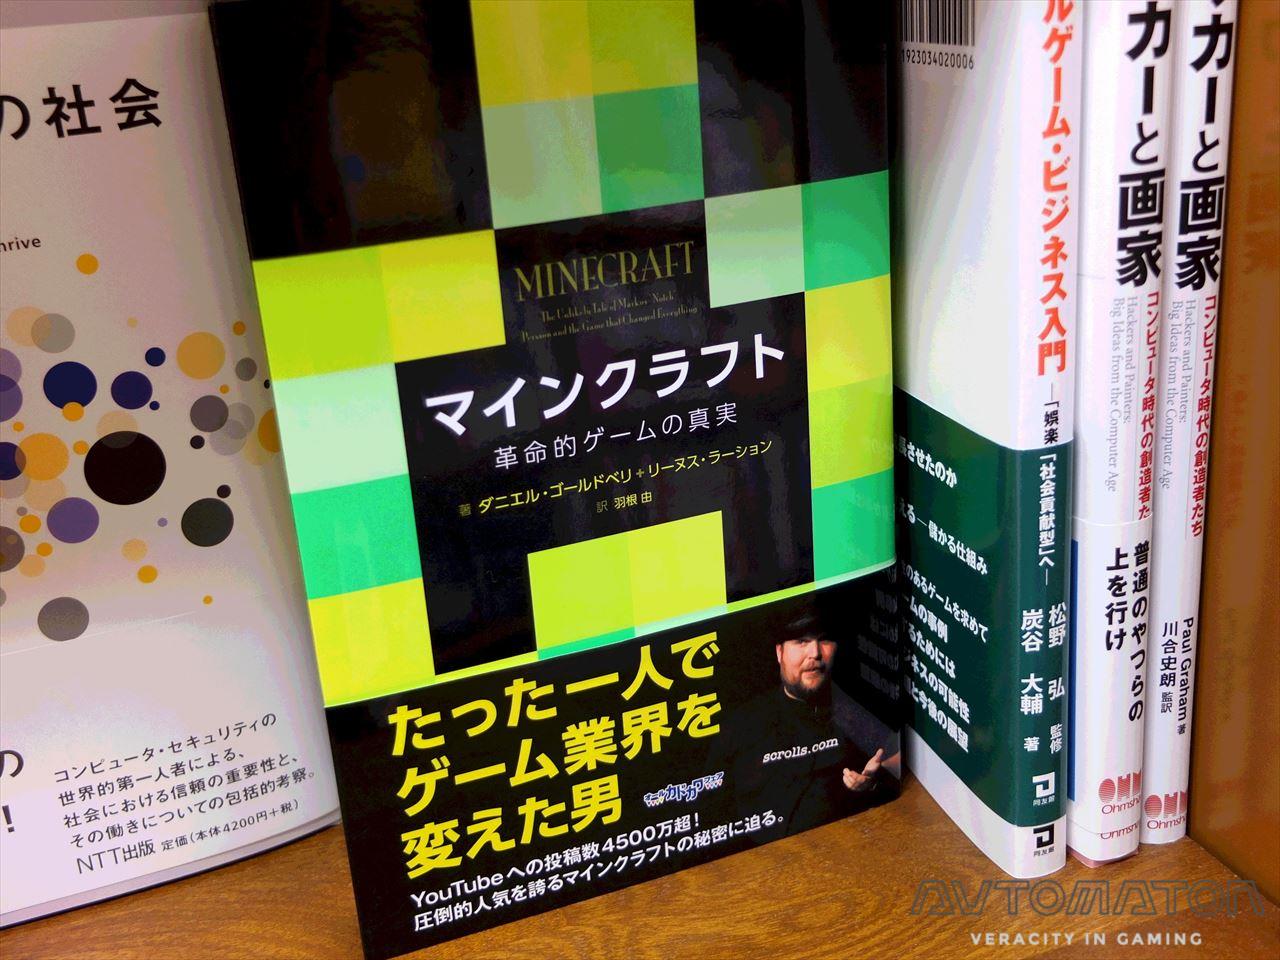 内容はともあれこういった書籍が翻訳され日本語で読めるのはゲーマーにとってはありがたい。